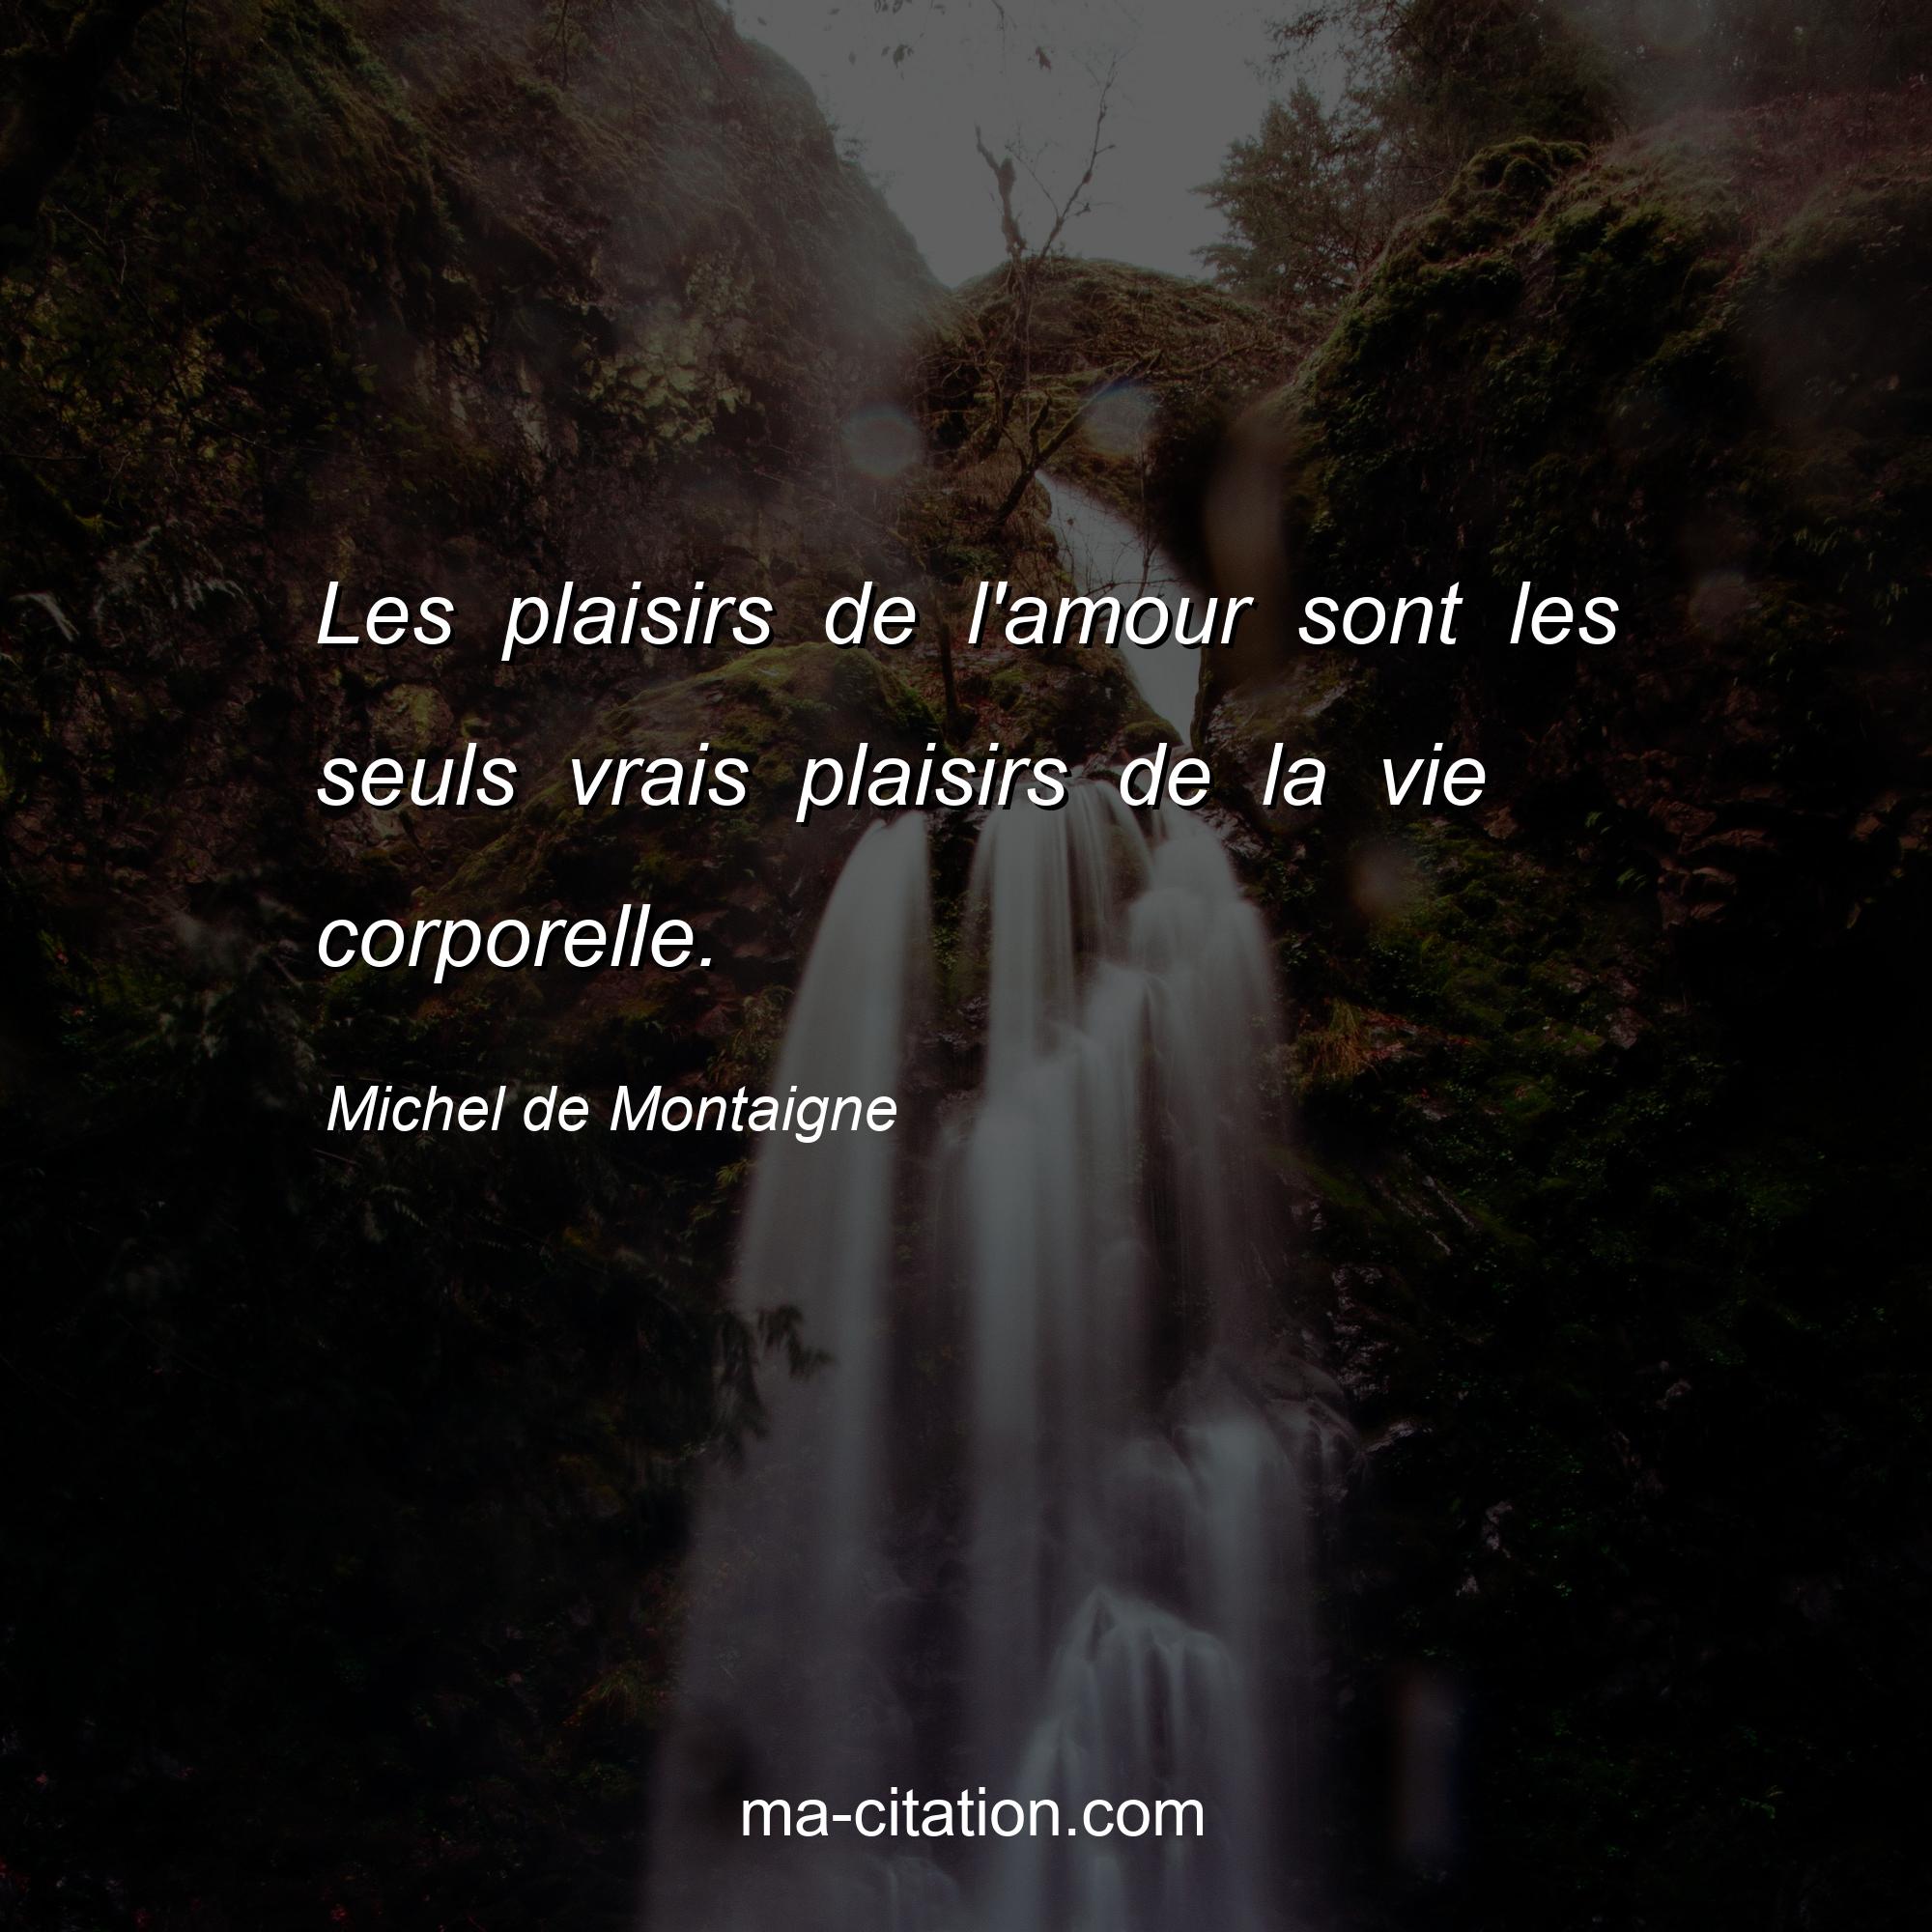 Michel de Montaigne : Les plaisirs de l'amour sont les seuls vrais plaisirs de la vie corporelle.